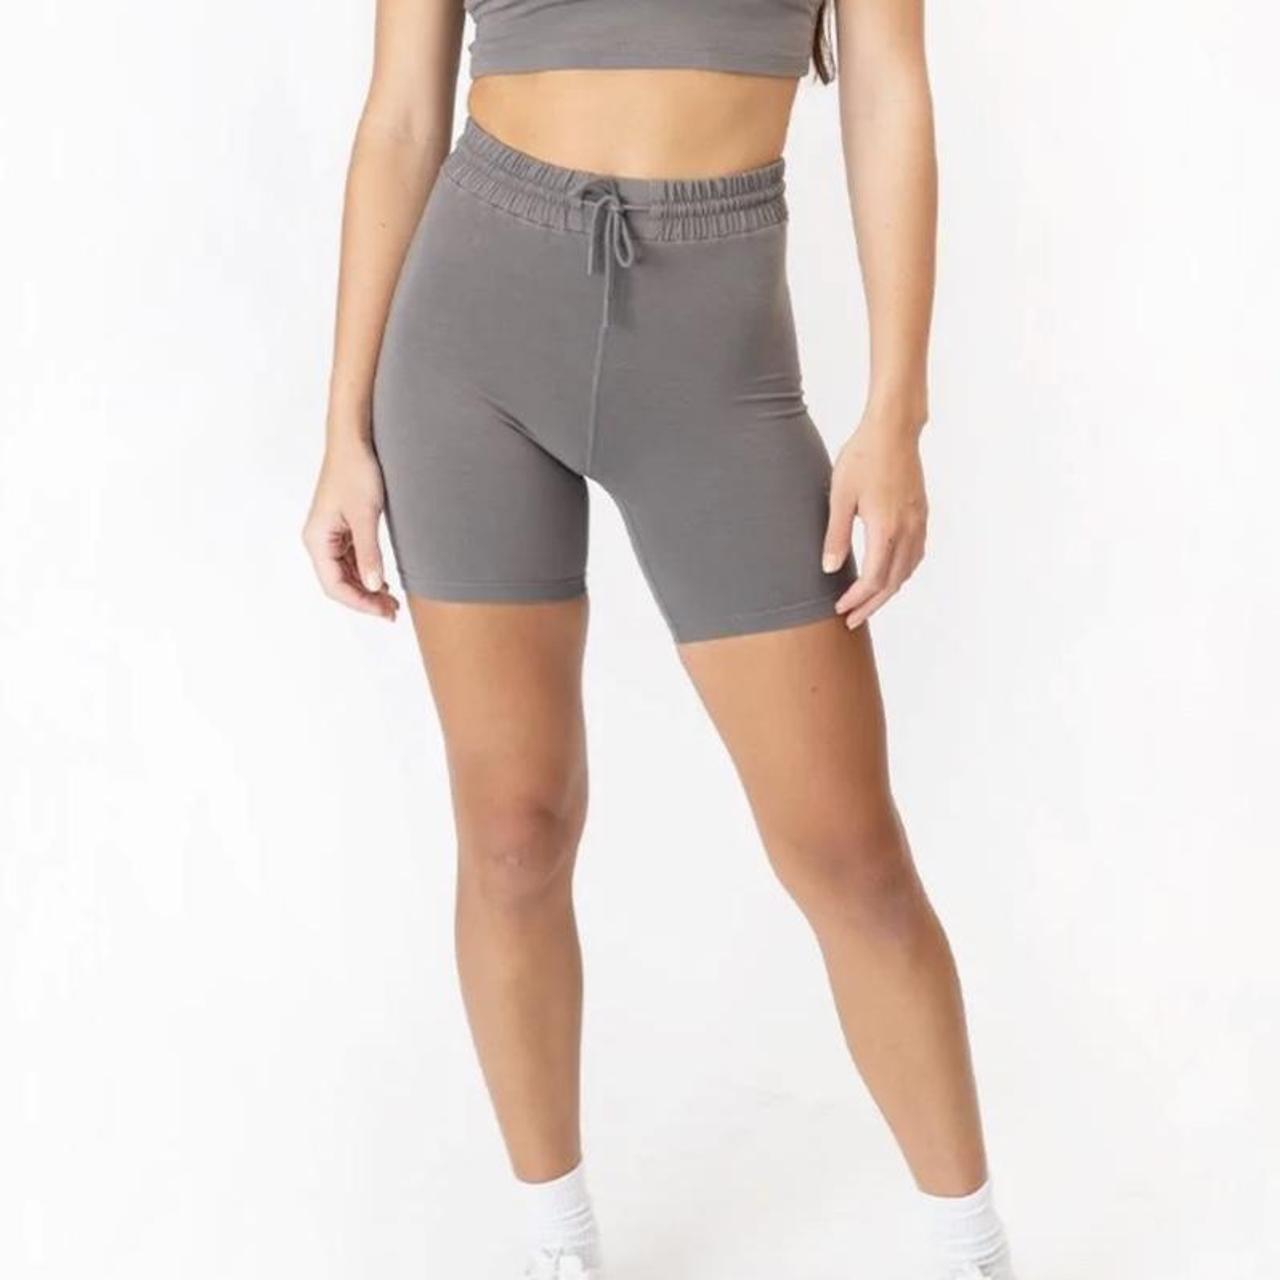 Paragon fitwear bioknit lounge shorts (5”) #shorts - Depop